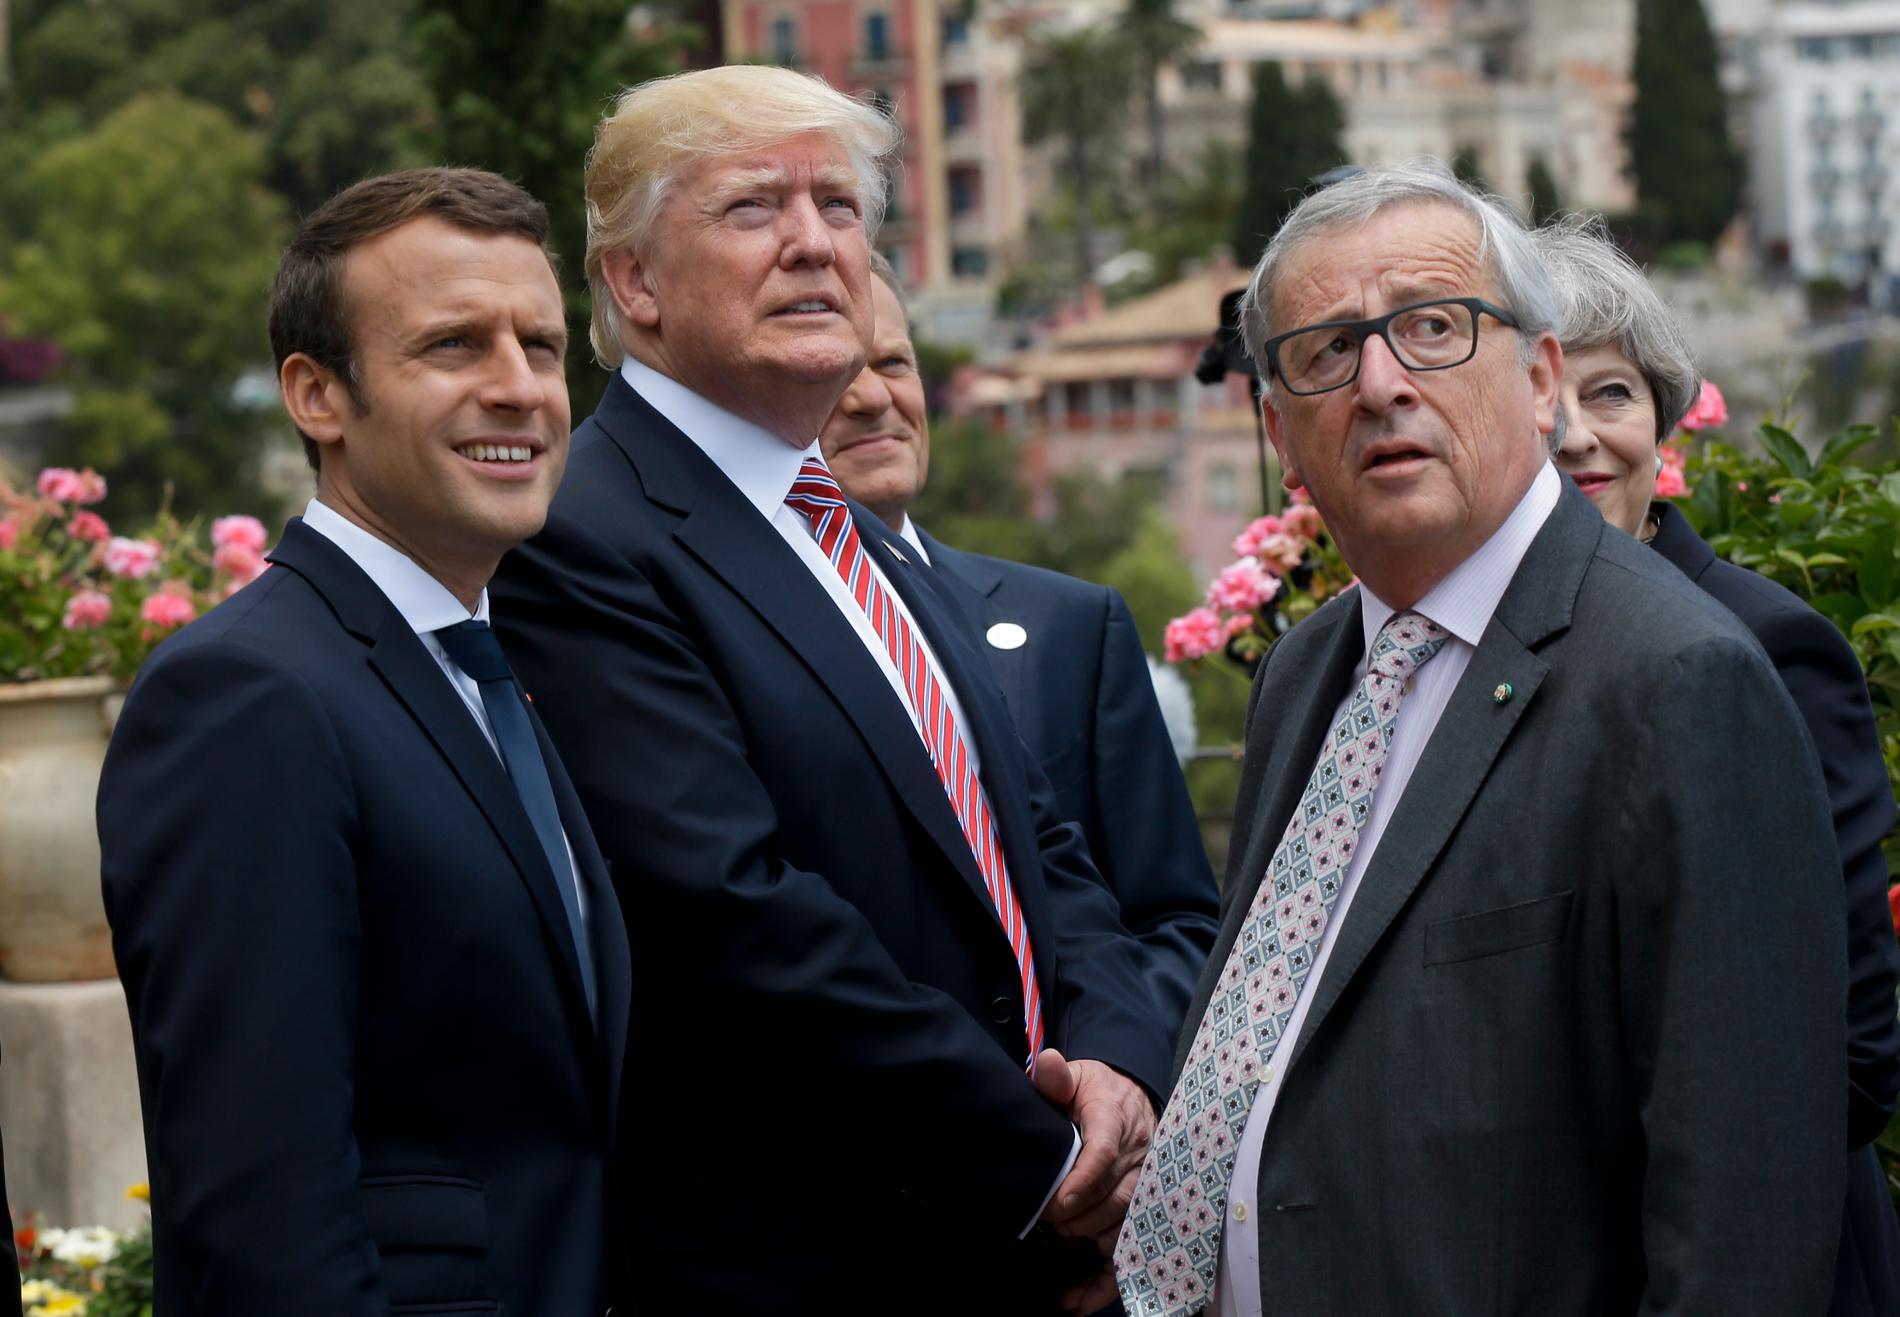 Frankrikes president Emmanuel Macron, USAs president Donald Trump och EU kommissionens ordförande Jean-Claude Juncker.